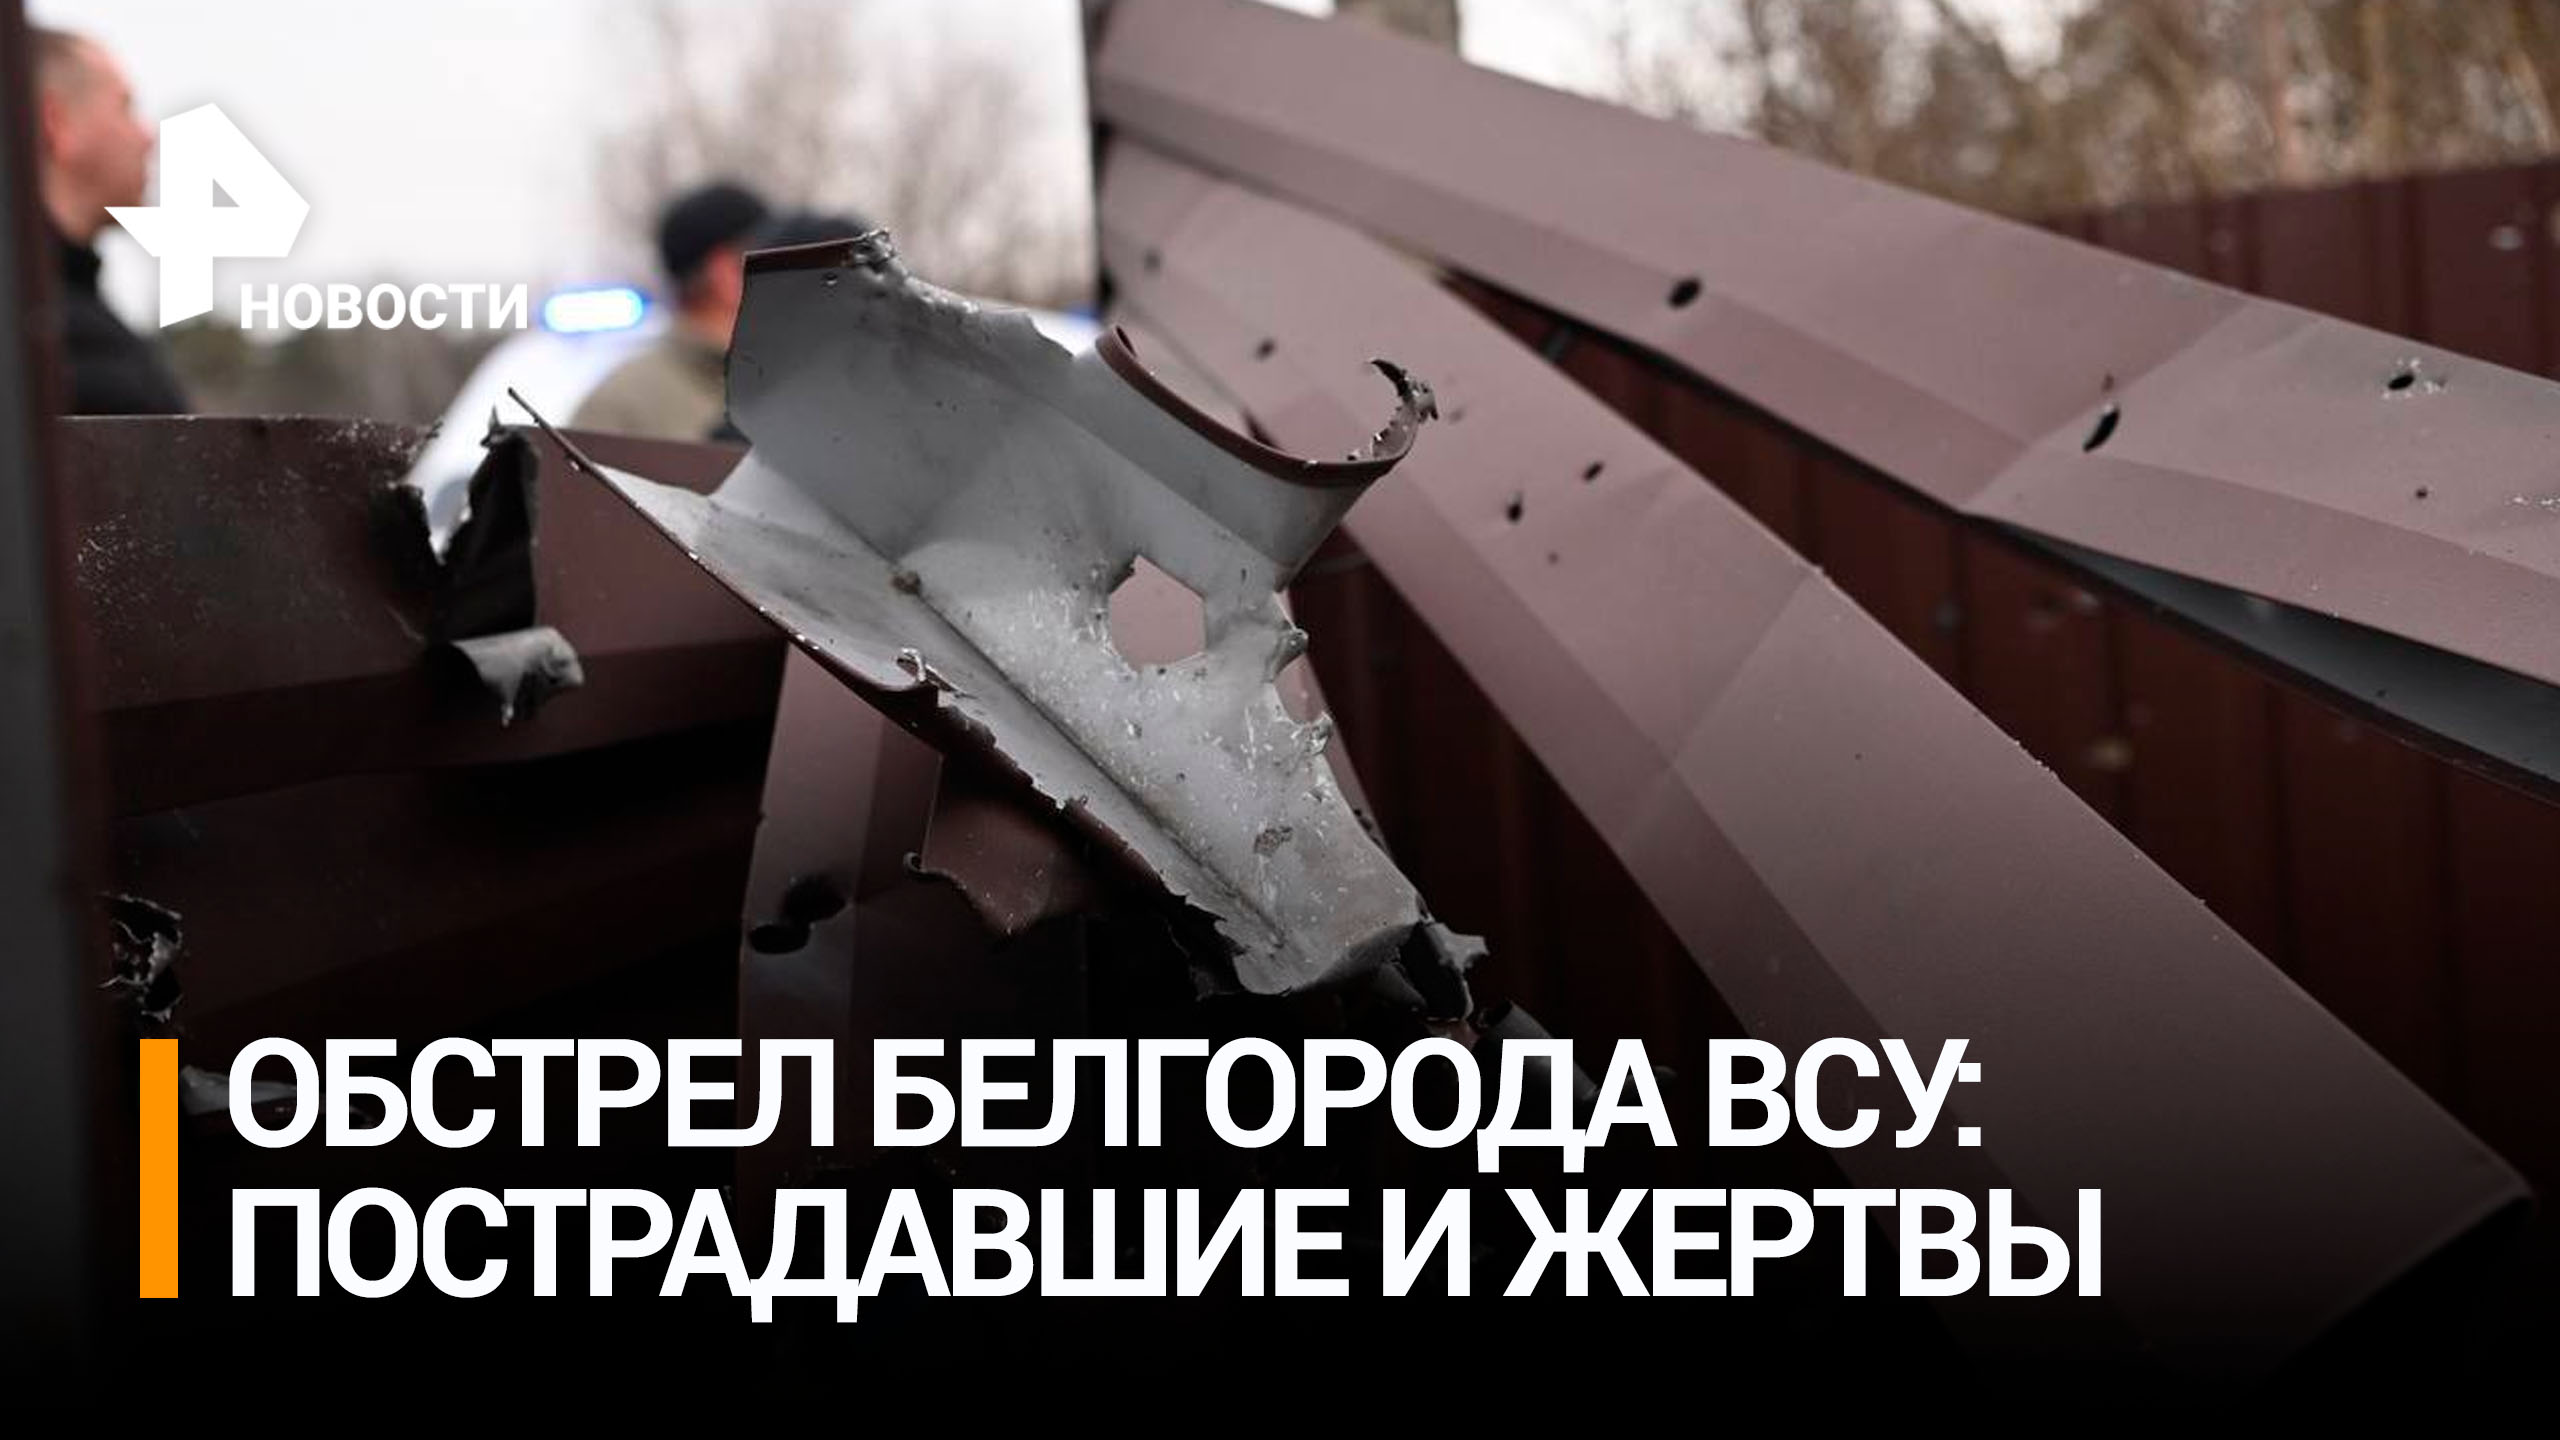 Один человек погиб при попадании украинского снаряда в автомобиль под Белгородом / РЕН Новости